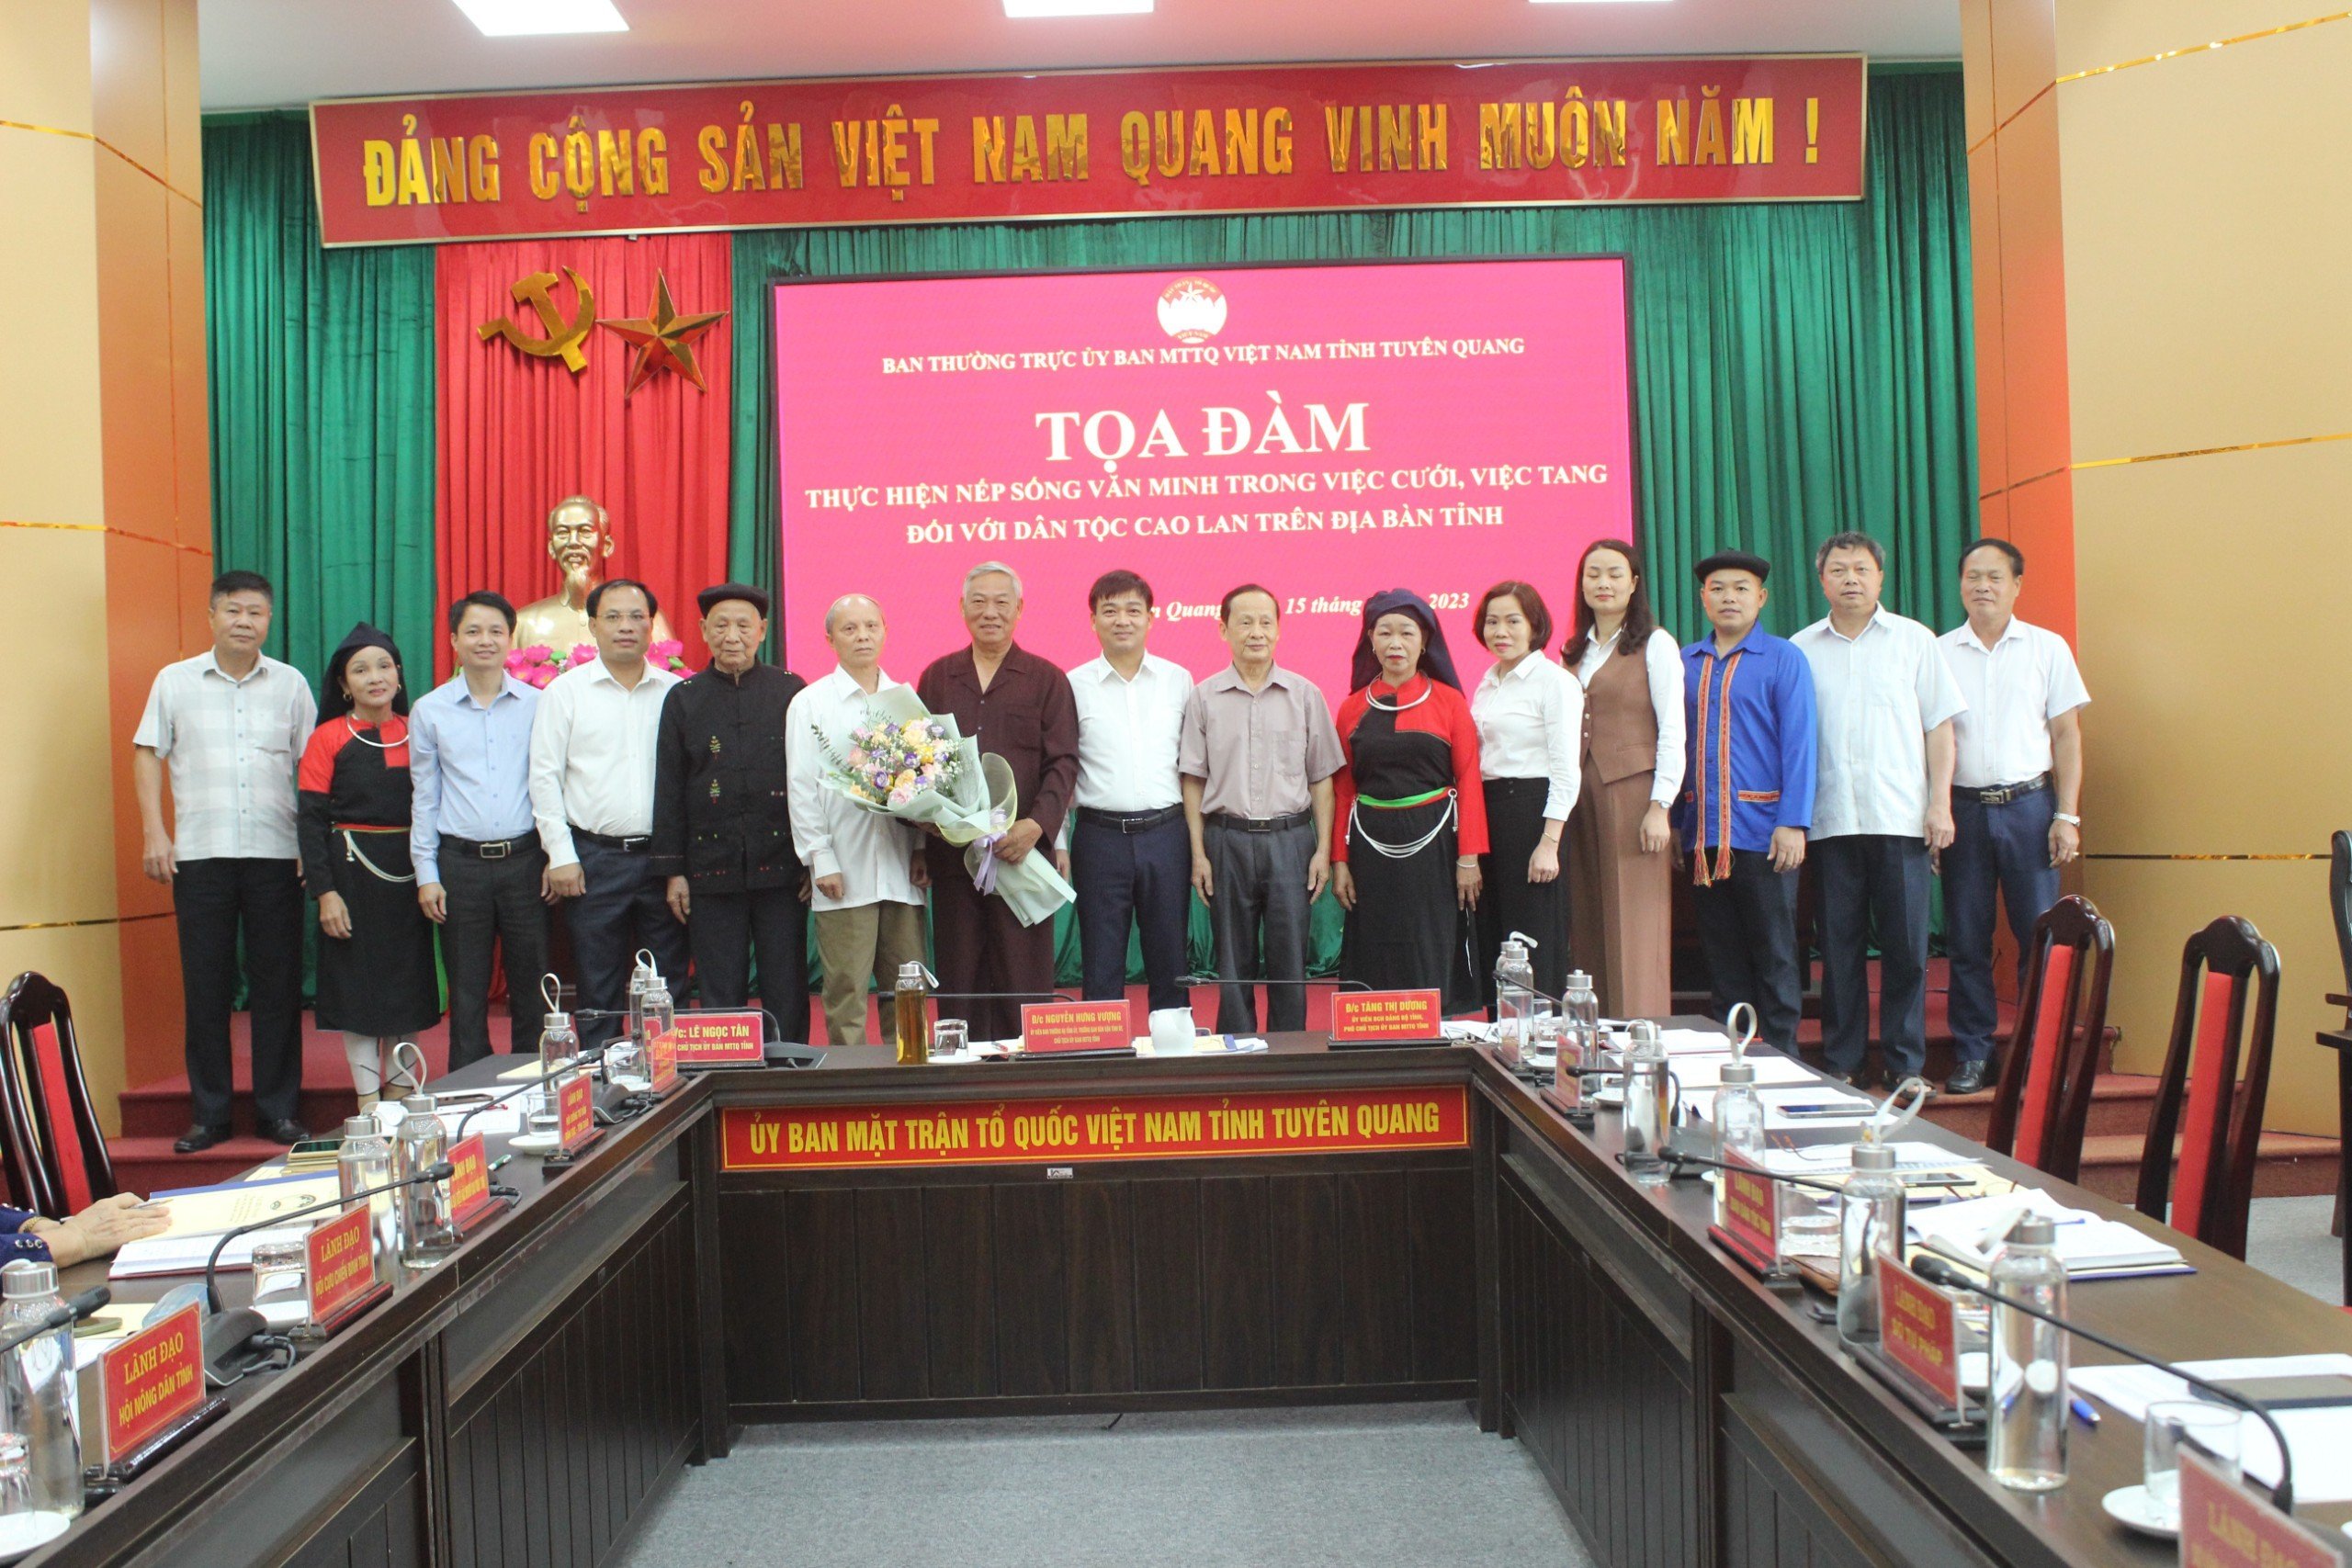 Uỷ ban MTTQ tỉnh Tuyên Quang tổ chức Toạ đàm thực hiện nếp sống văn minh trong việc cưới, việc tang của dân tộc Cao Lan